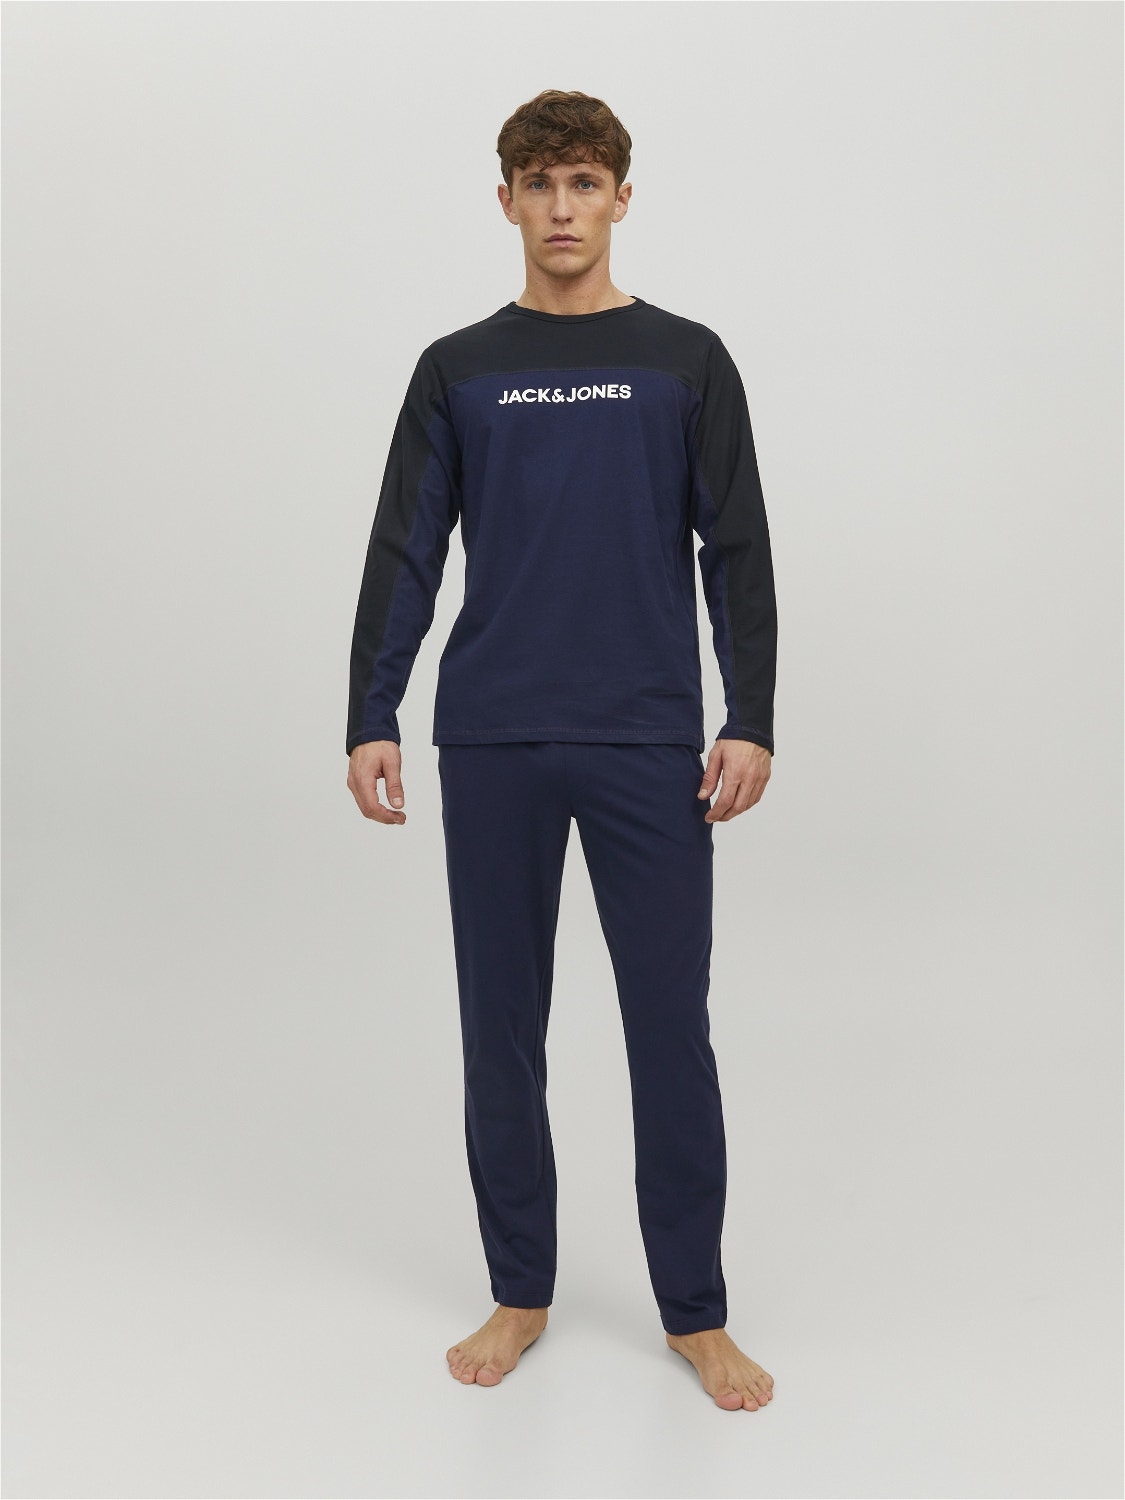 Jack & Jones Loungewear -Navy Blazer - 12202590